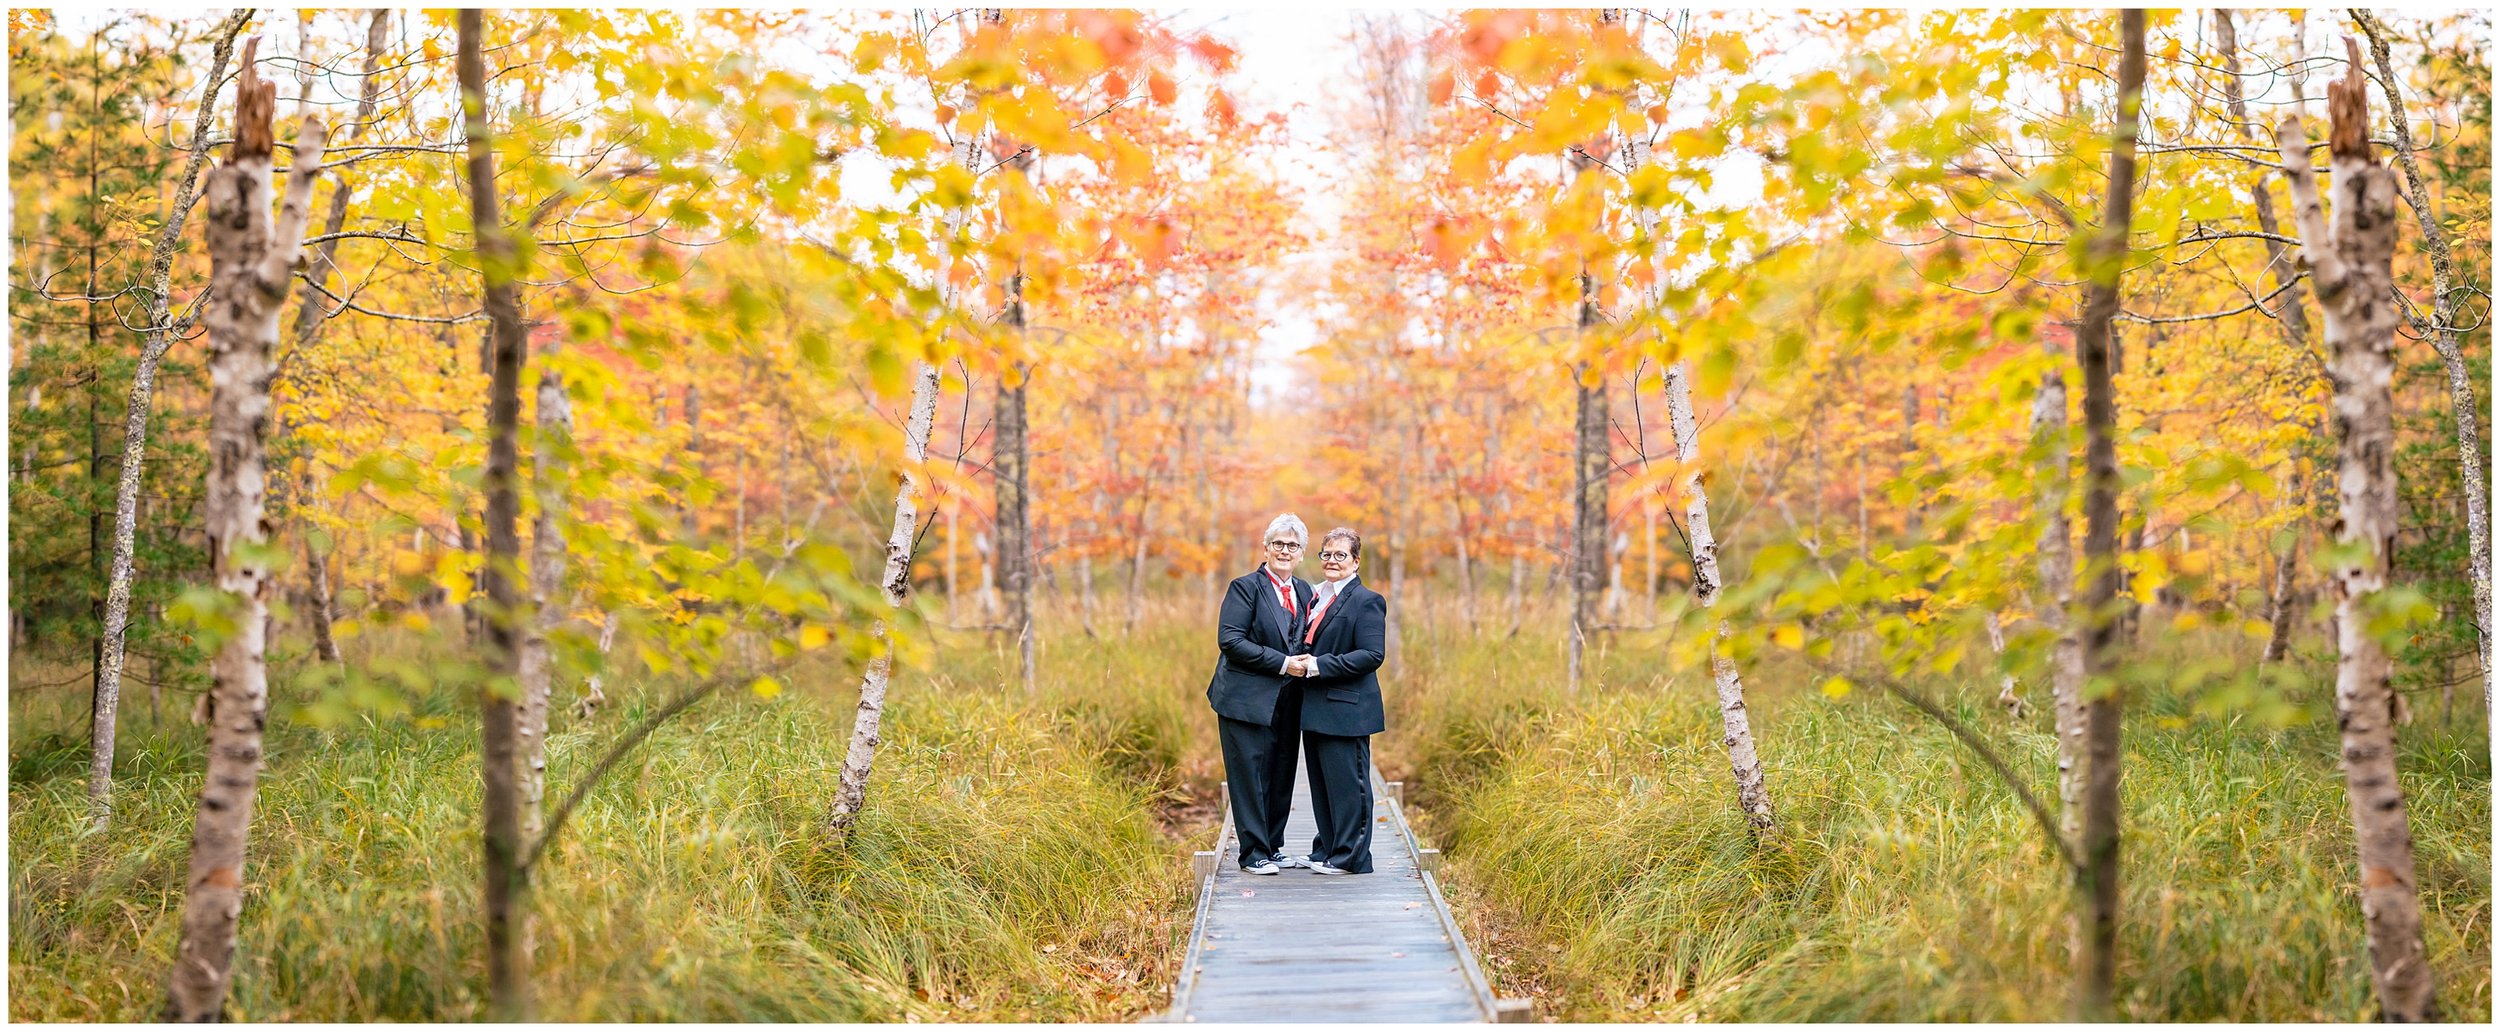 Acadia National Park Wedding Photographer, Bar Harbor Wedding Photographer, Two Adventurous Souls- 101022_0021.jpg